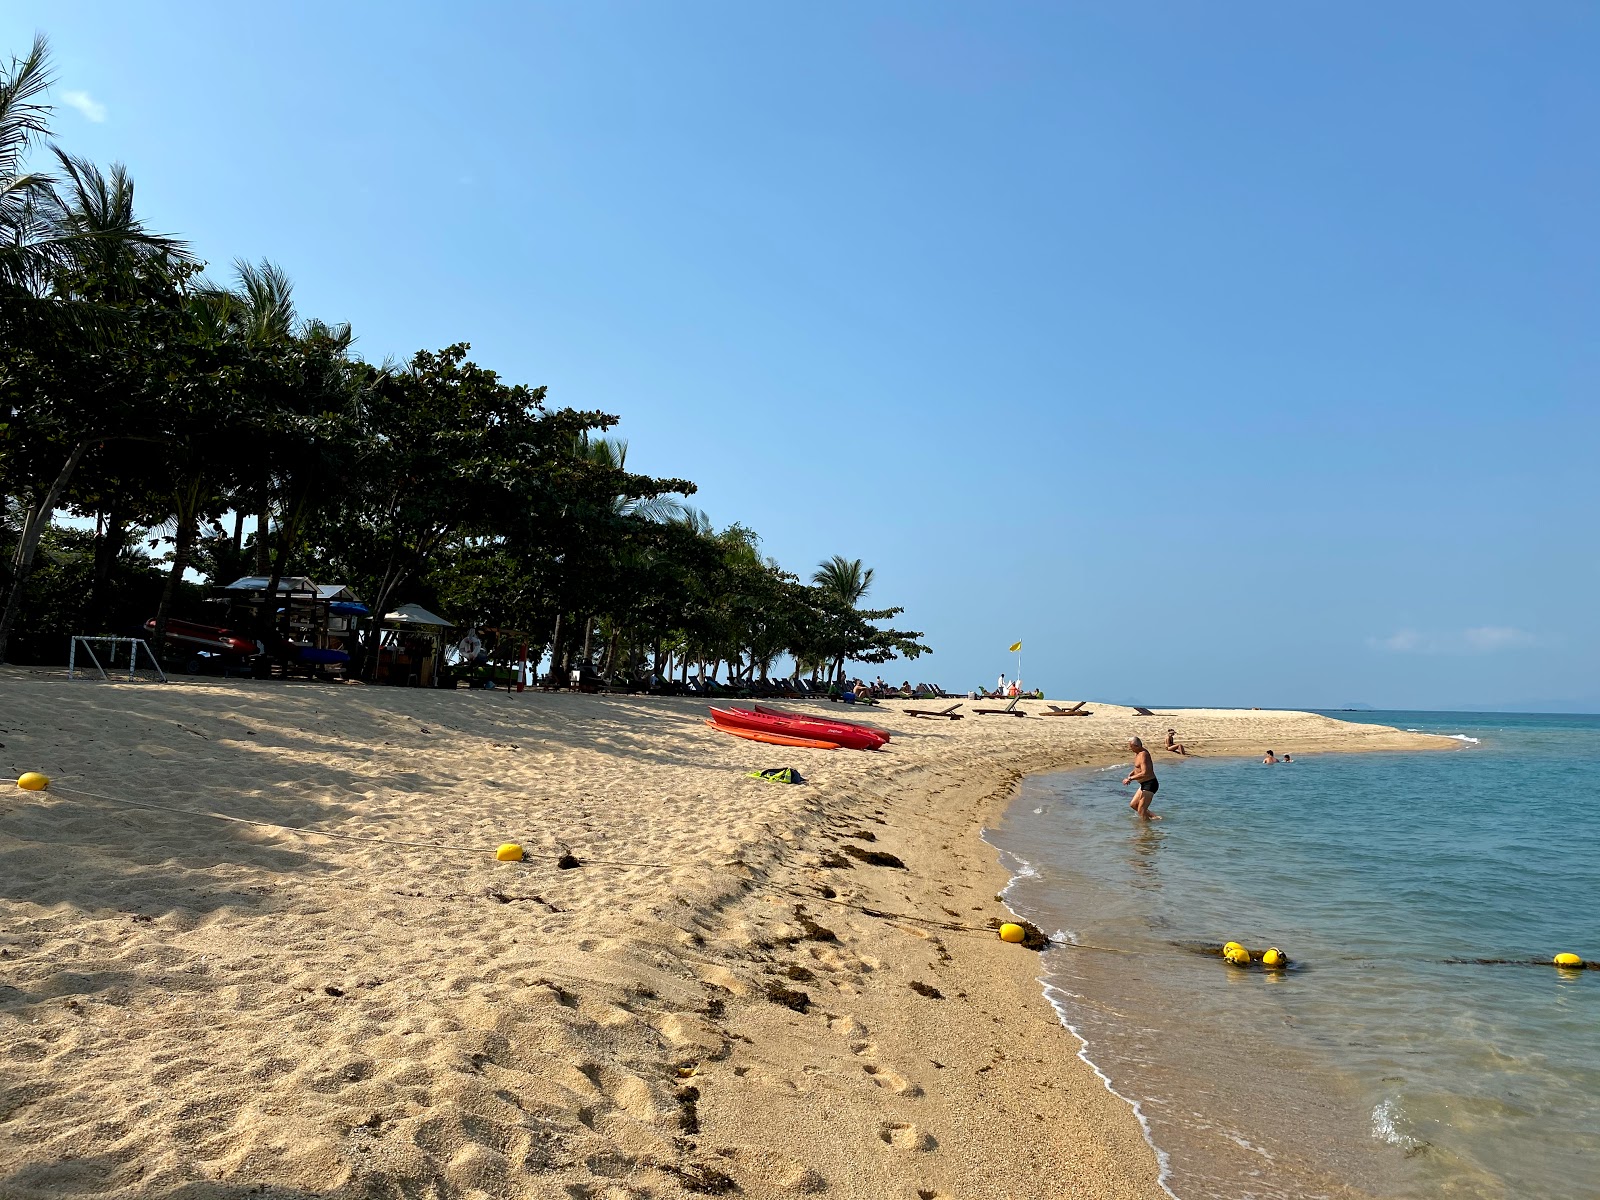 Fotografie cu W Beach - locul popular printre cunoscătorii de relaxare